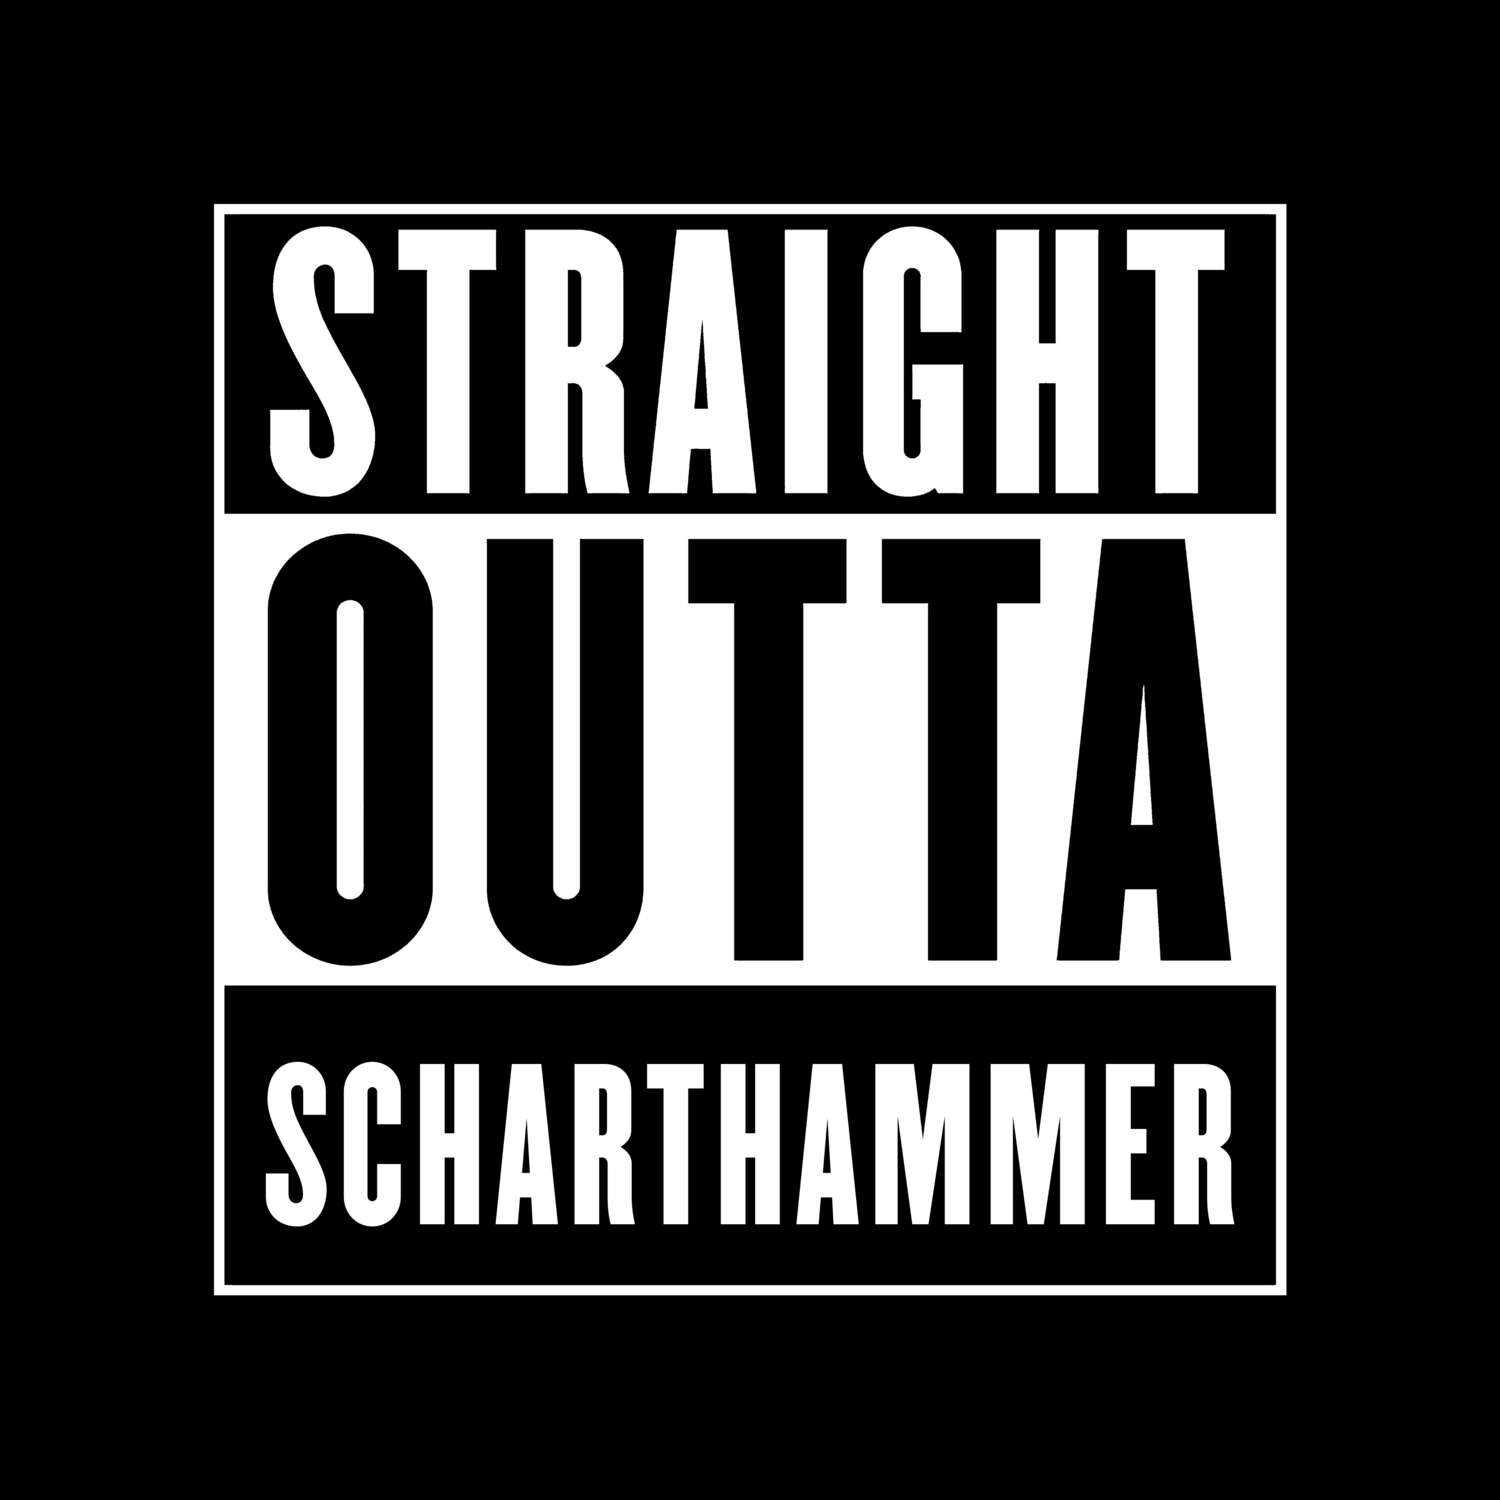 Scharthammer T-Shirt »Straight Outta«